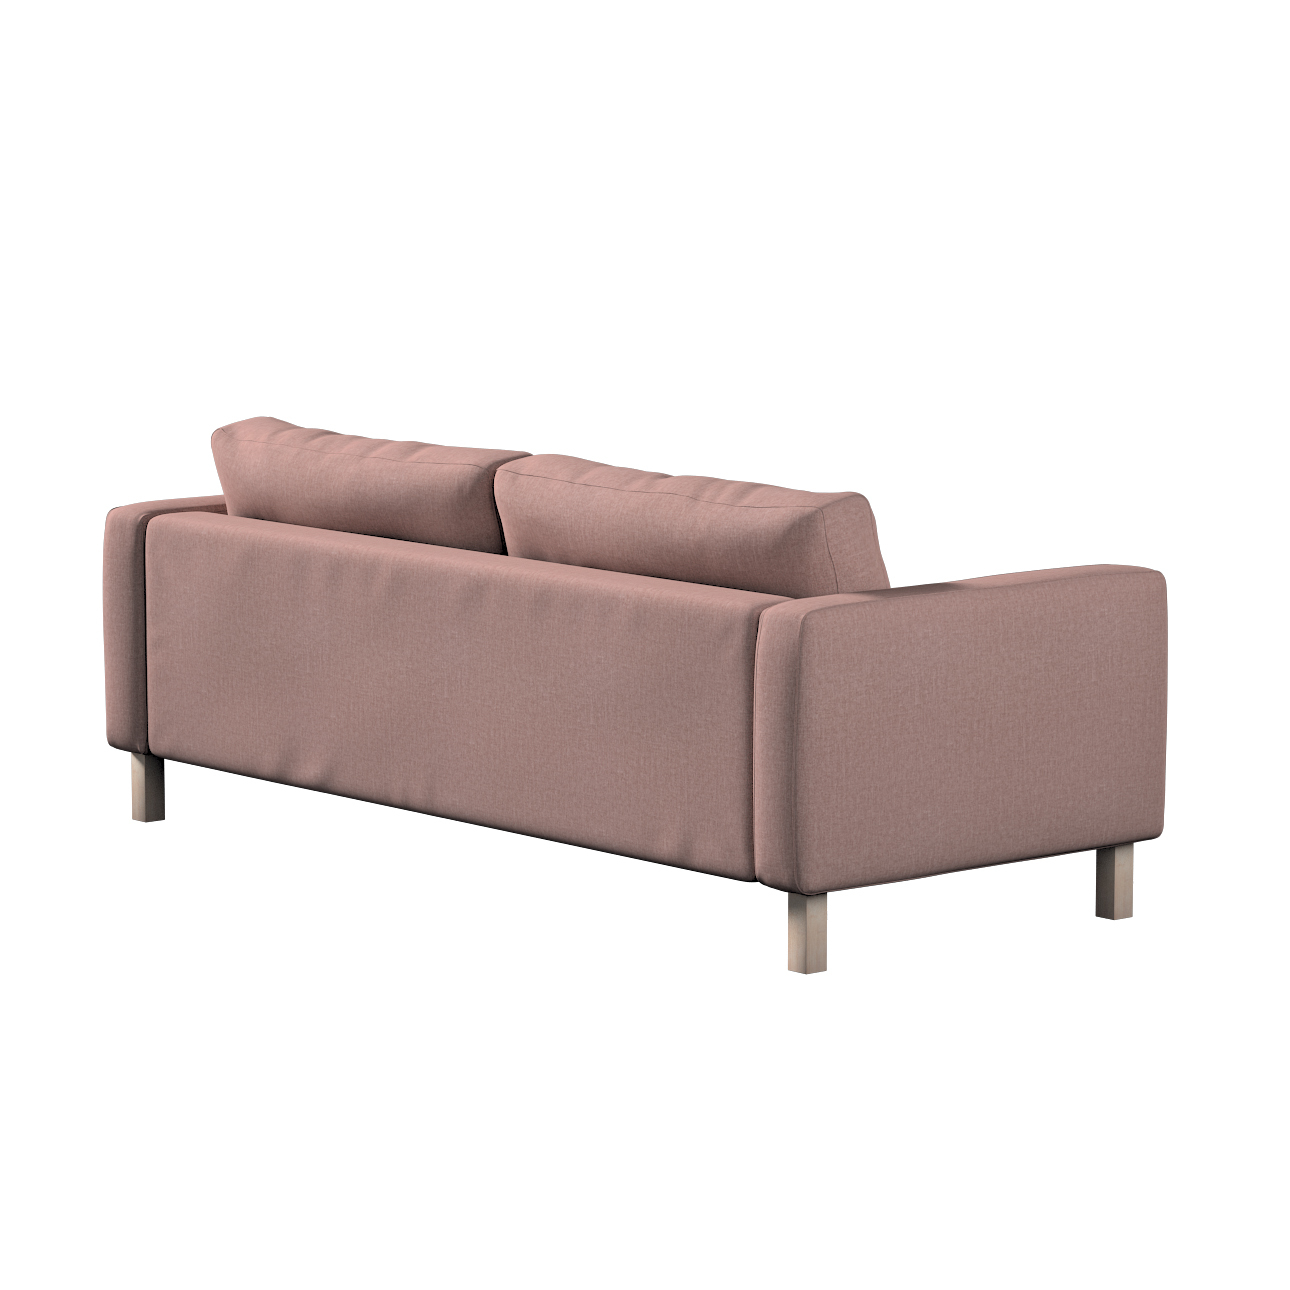 Bezug für Karlstad 3-Sitzer Sofa nicht ausklappbar, kurz, altrosa, Bezug fü günstig online kaufen